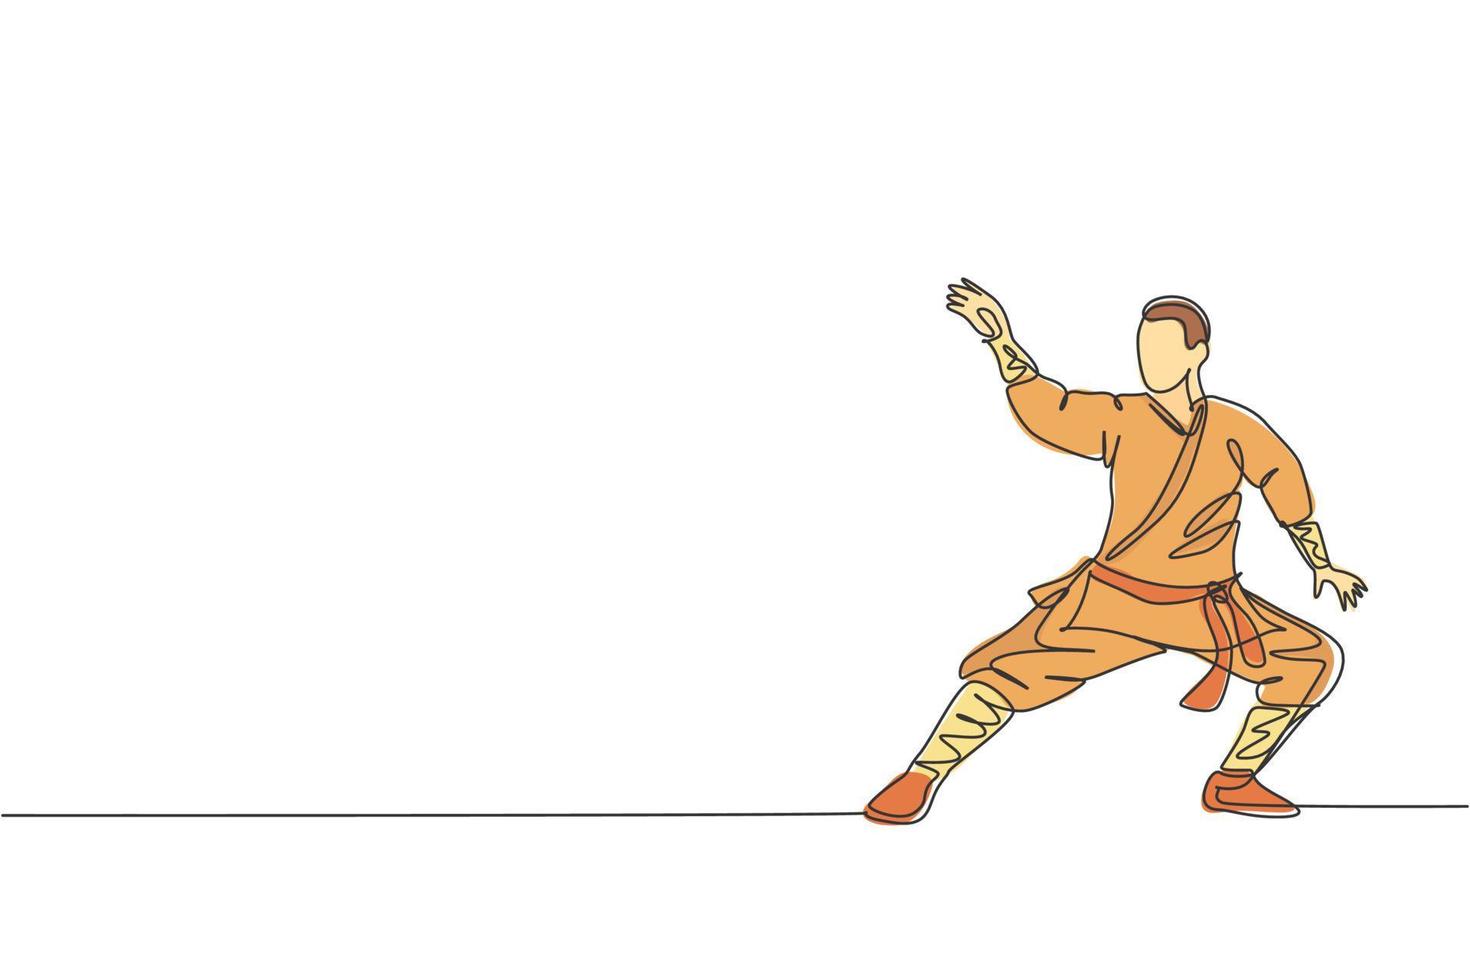 dibujo de una sola línea continua joven monje shaolin musculoso hombre entrenar arte marcial en el templo shaolin. concepto de lucha de kung fu chino tradicional. Ilustración de vector gráfico de diseño de dibujo de una línea de moda